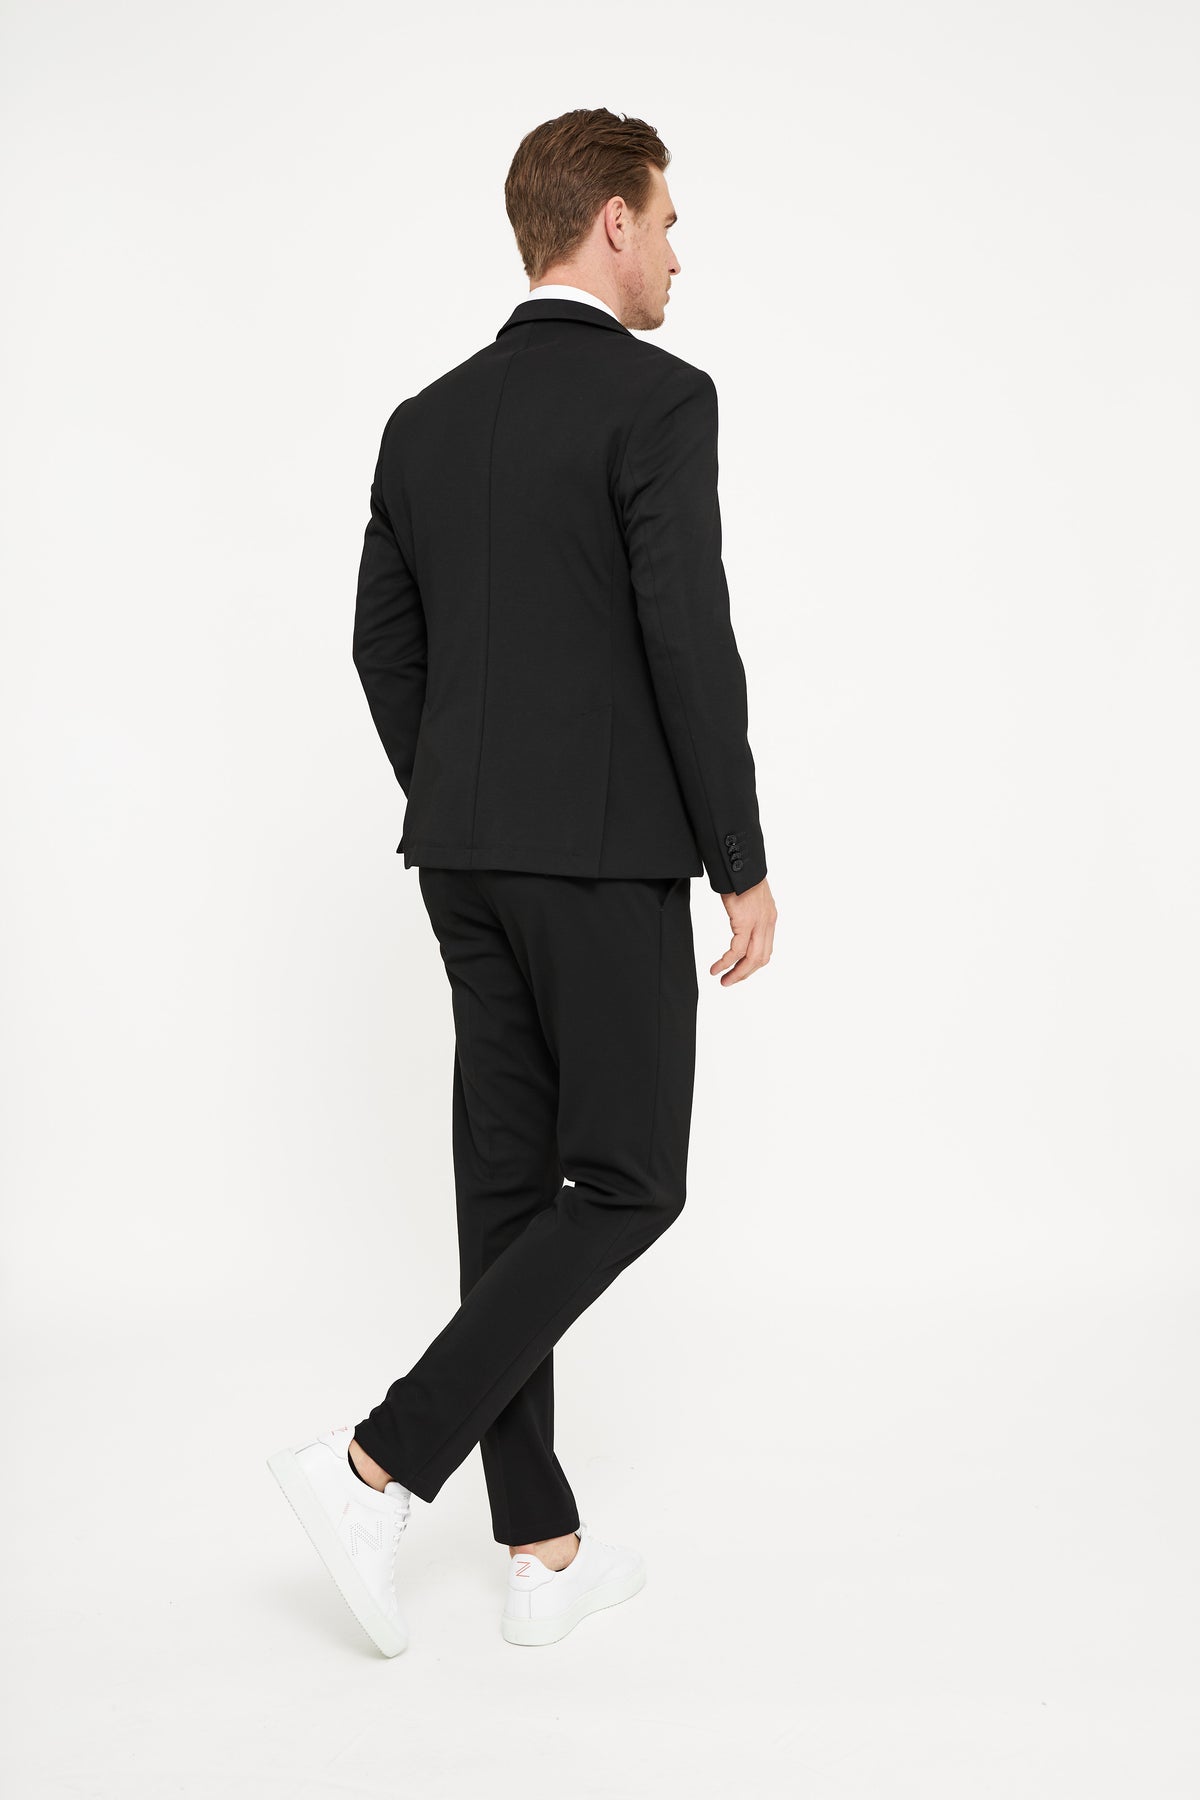 Jersey Suit 202641-900